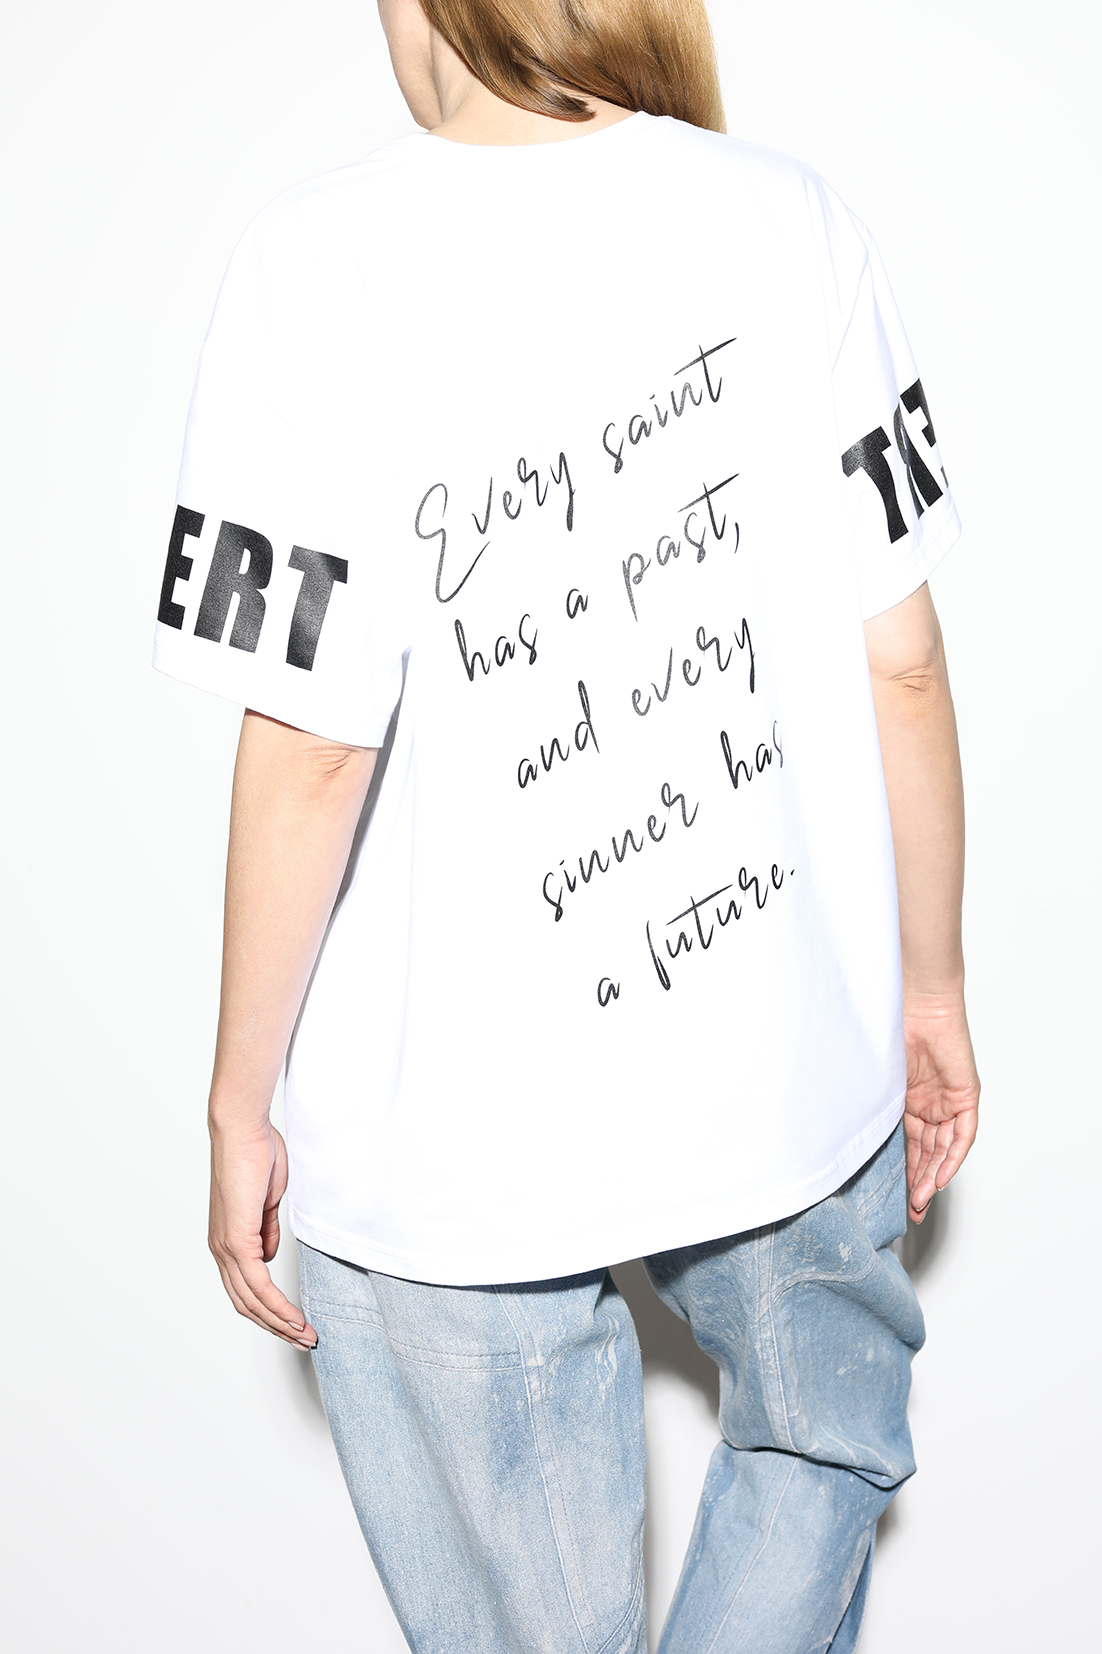 T-Shirt-Every-Saint-2, made of organic cotton, by designer Stefan Eckert